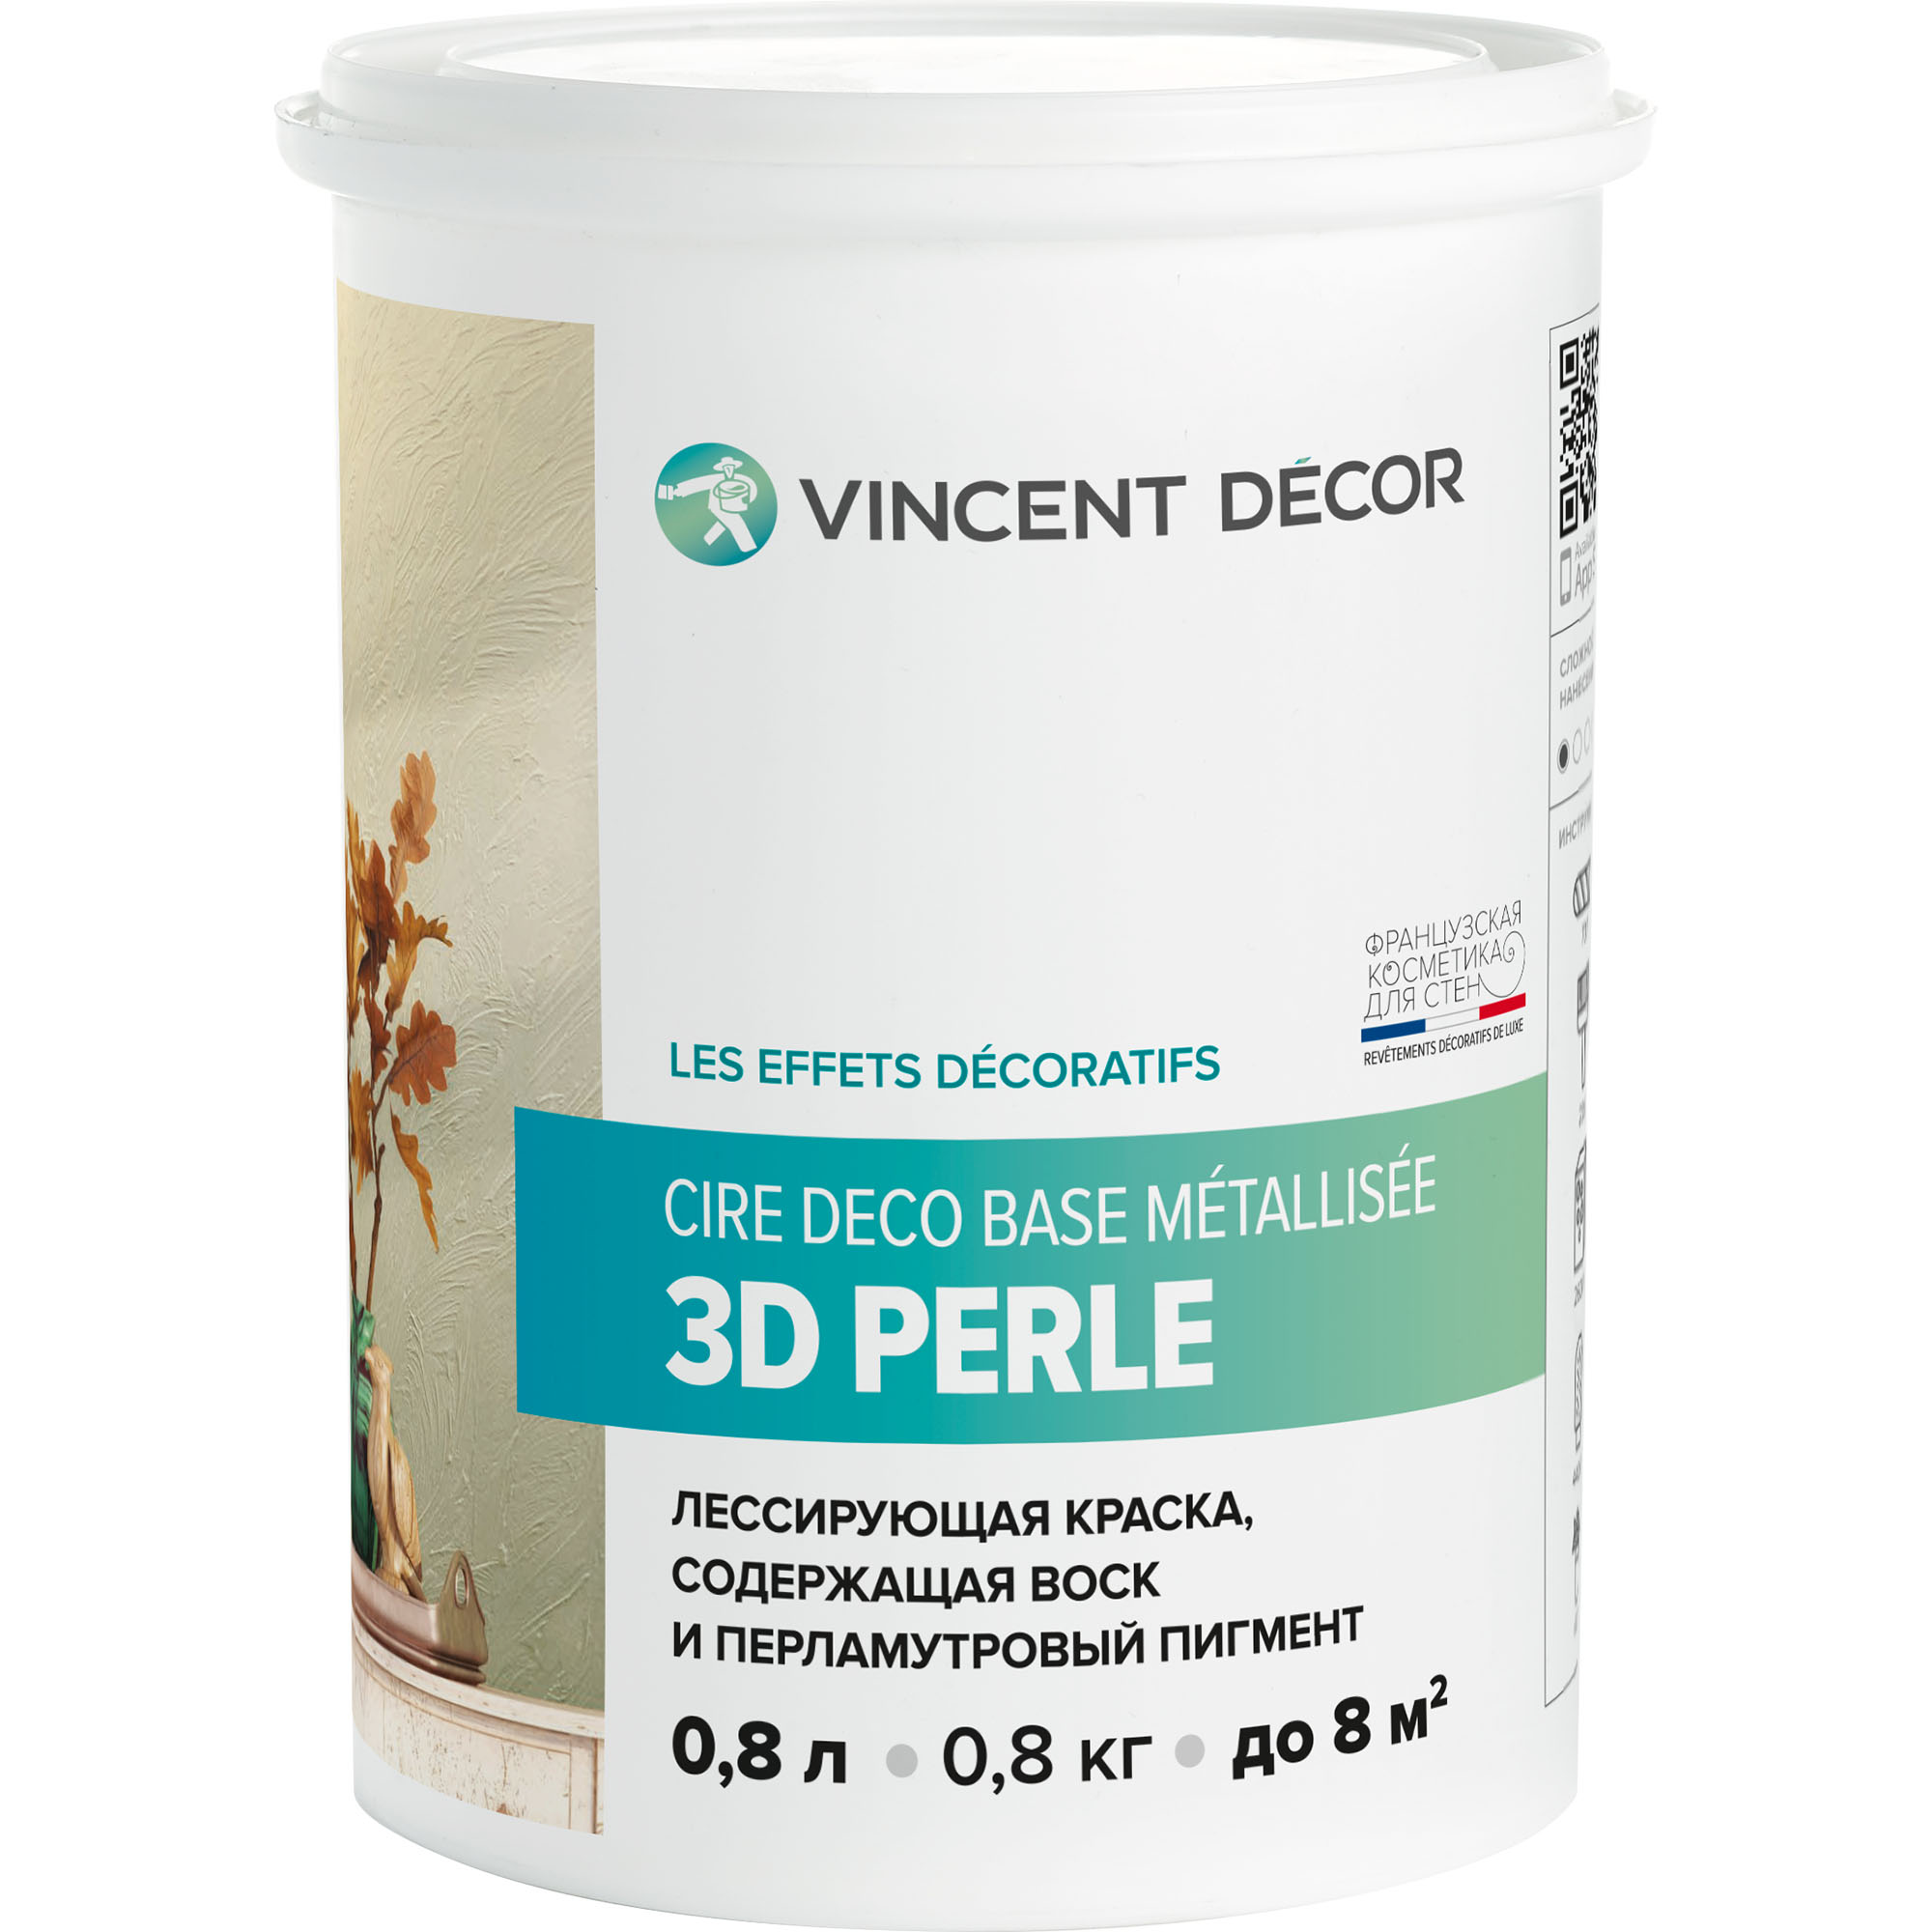 Краска лессирующая для декоративных покрытий Vincent Decor Cire deco base Metallisee 3D Perle золотистый перламутр 0,8 л грунтовка для структурных декоративных покрытий vincent decor sous couсhe microgranite 4 кг